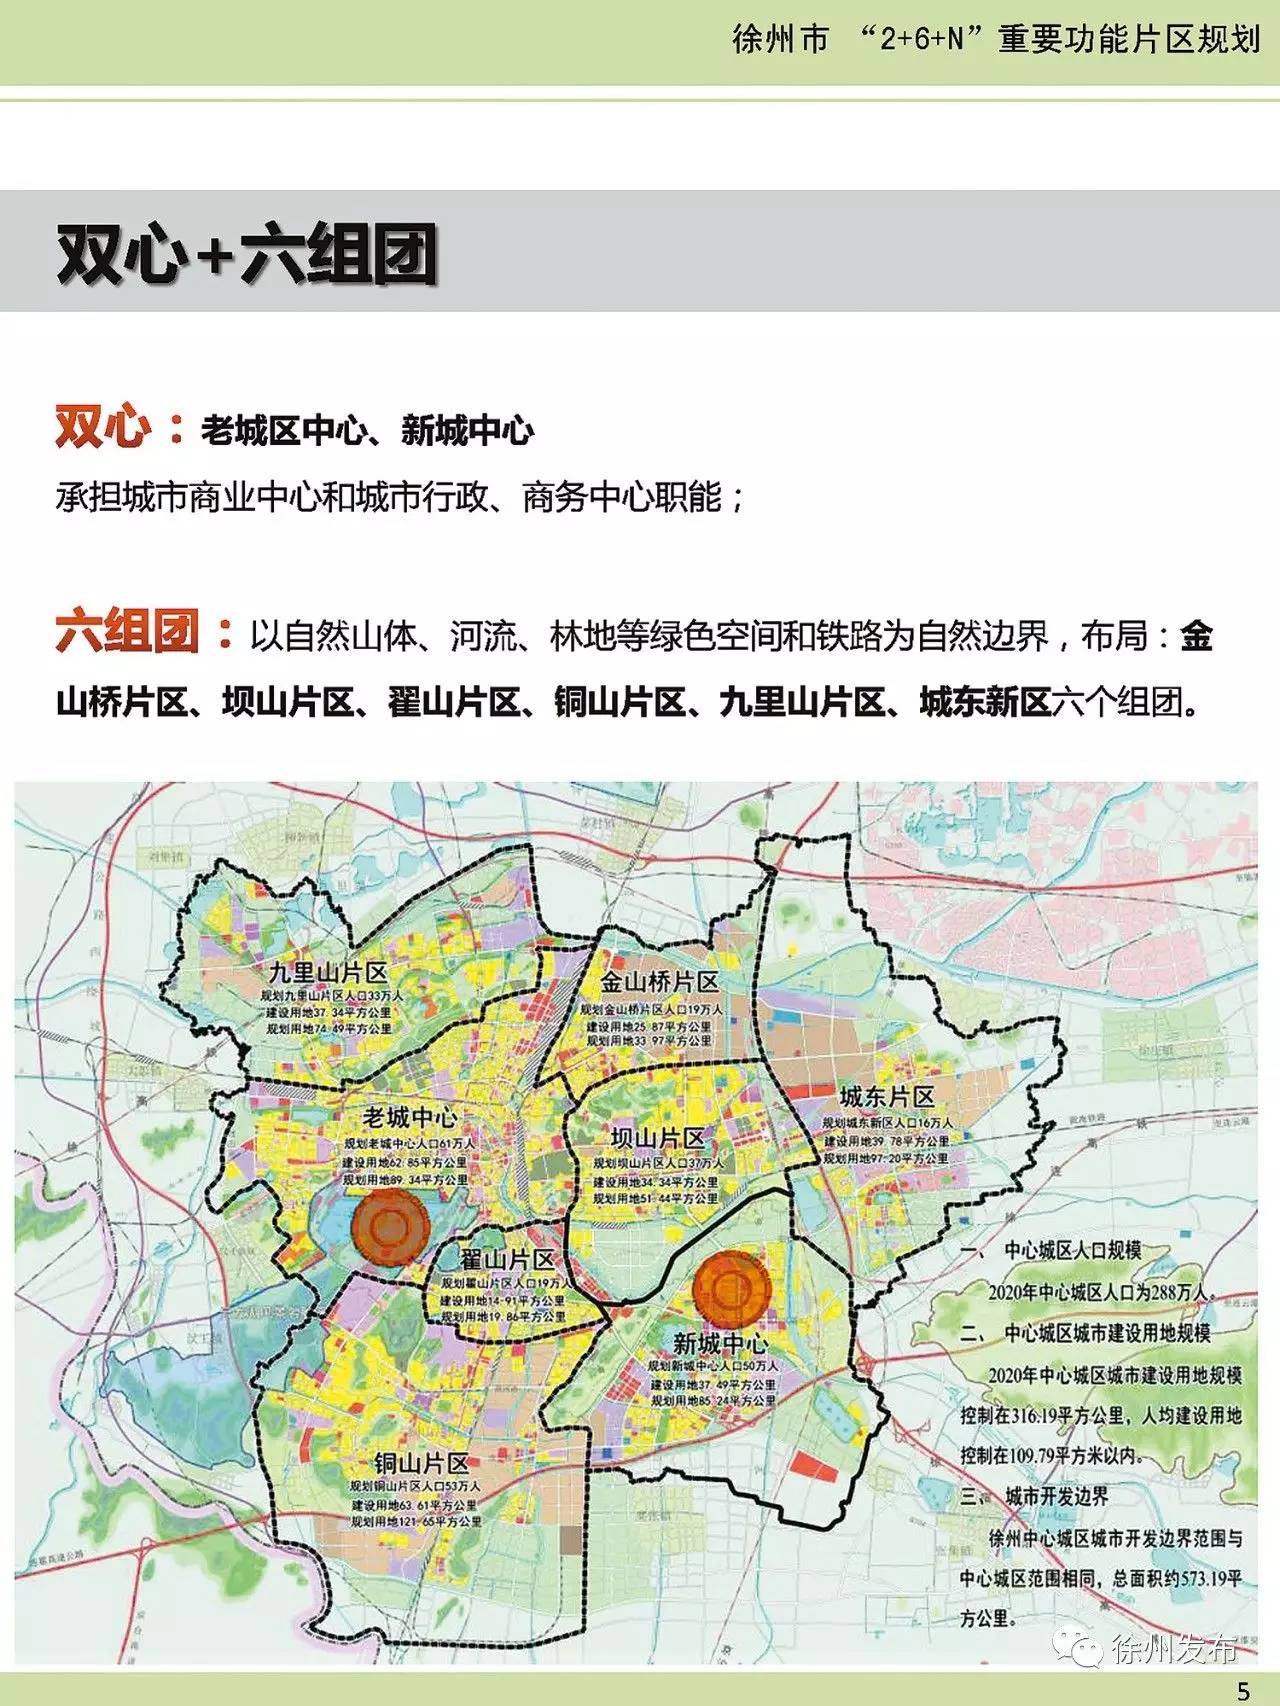 2615紧凑型城市徐州打造未来城市空间新格局